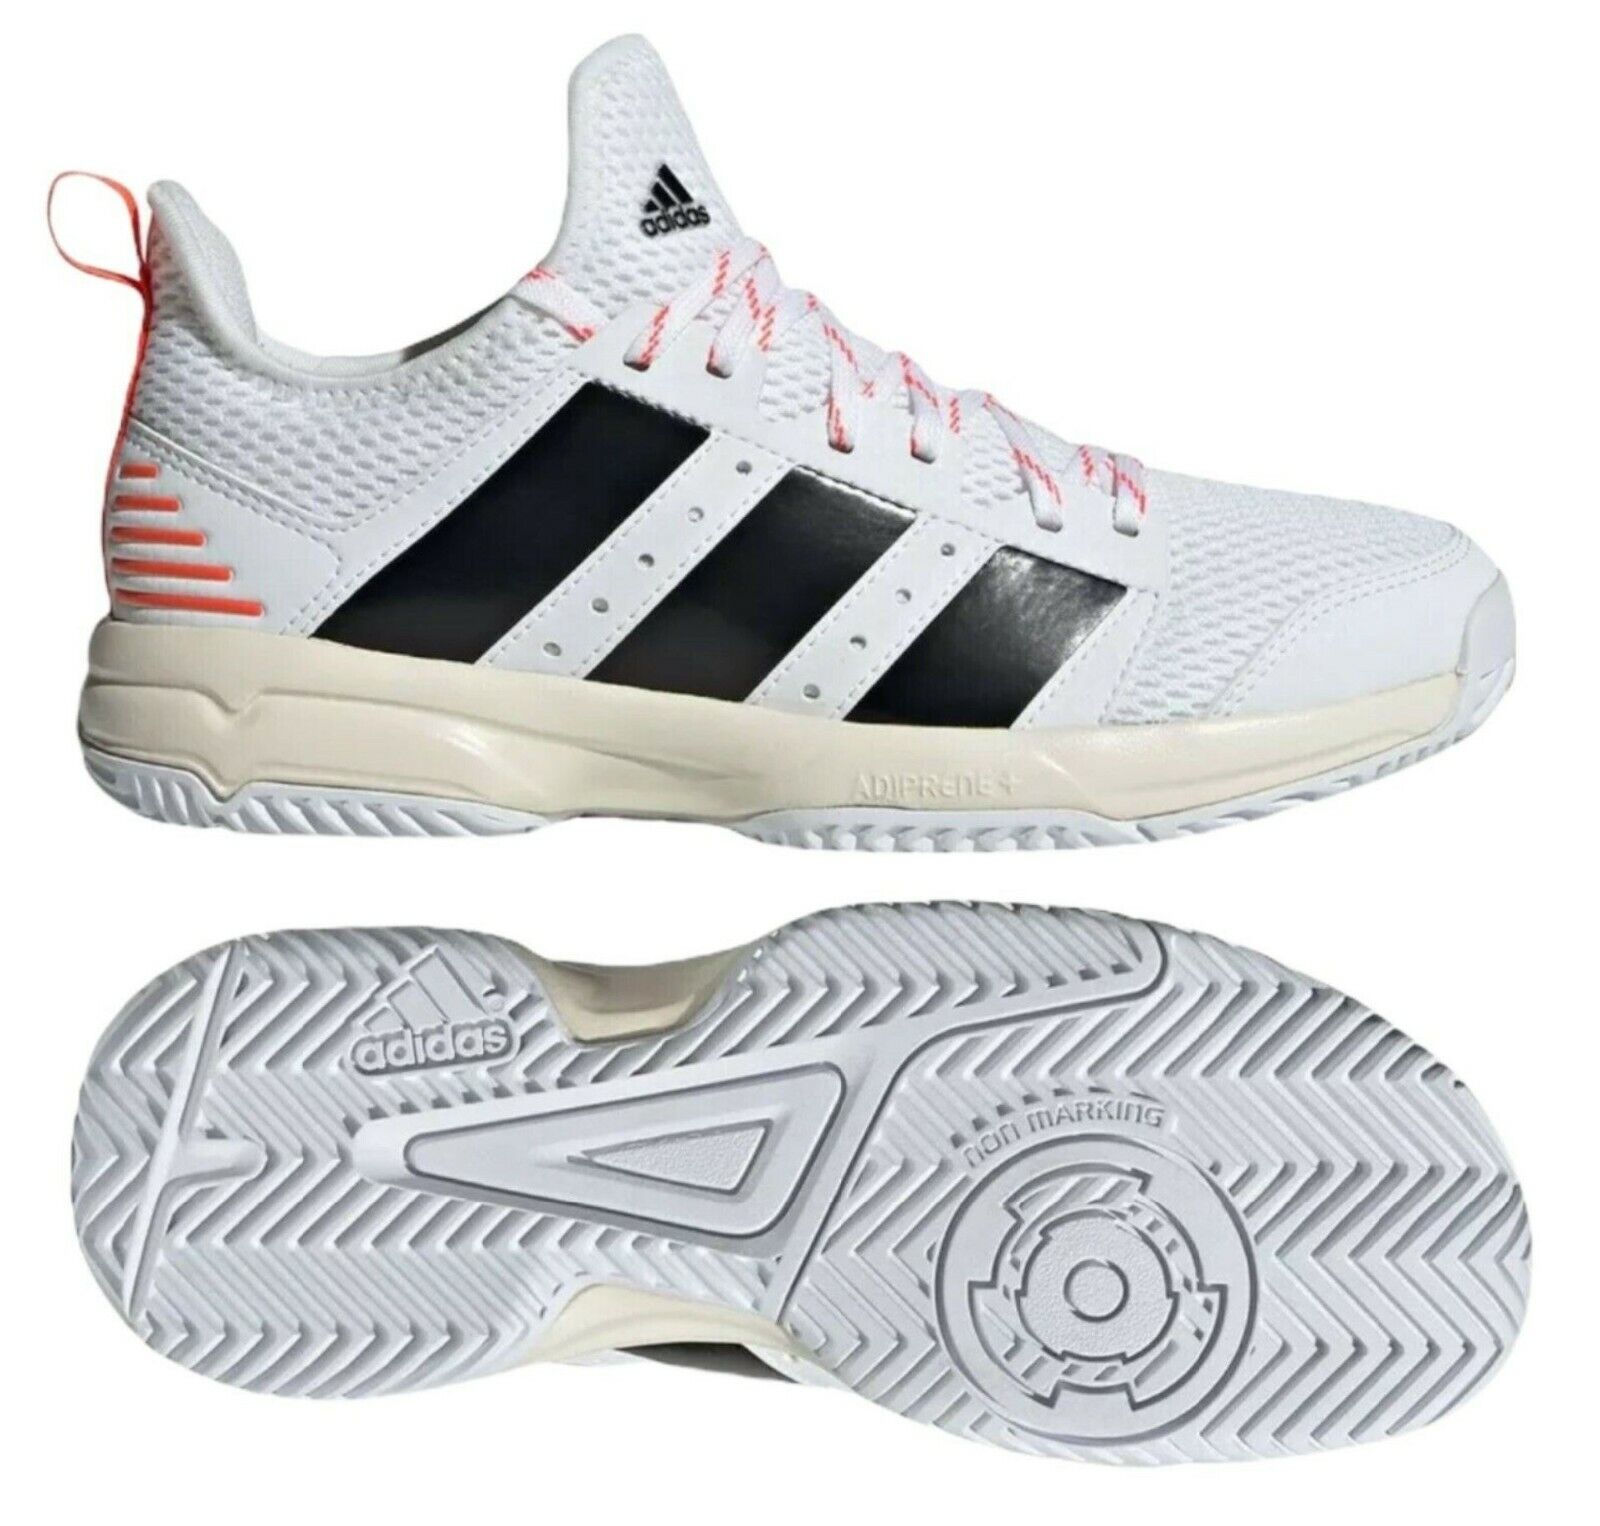 NEW Adidas Stabil Kids/Youth White/Black/Red, FZ4655, Sz | eBay